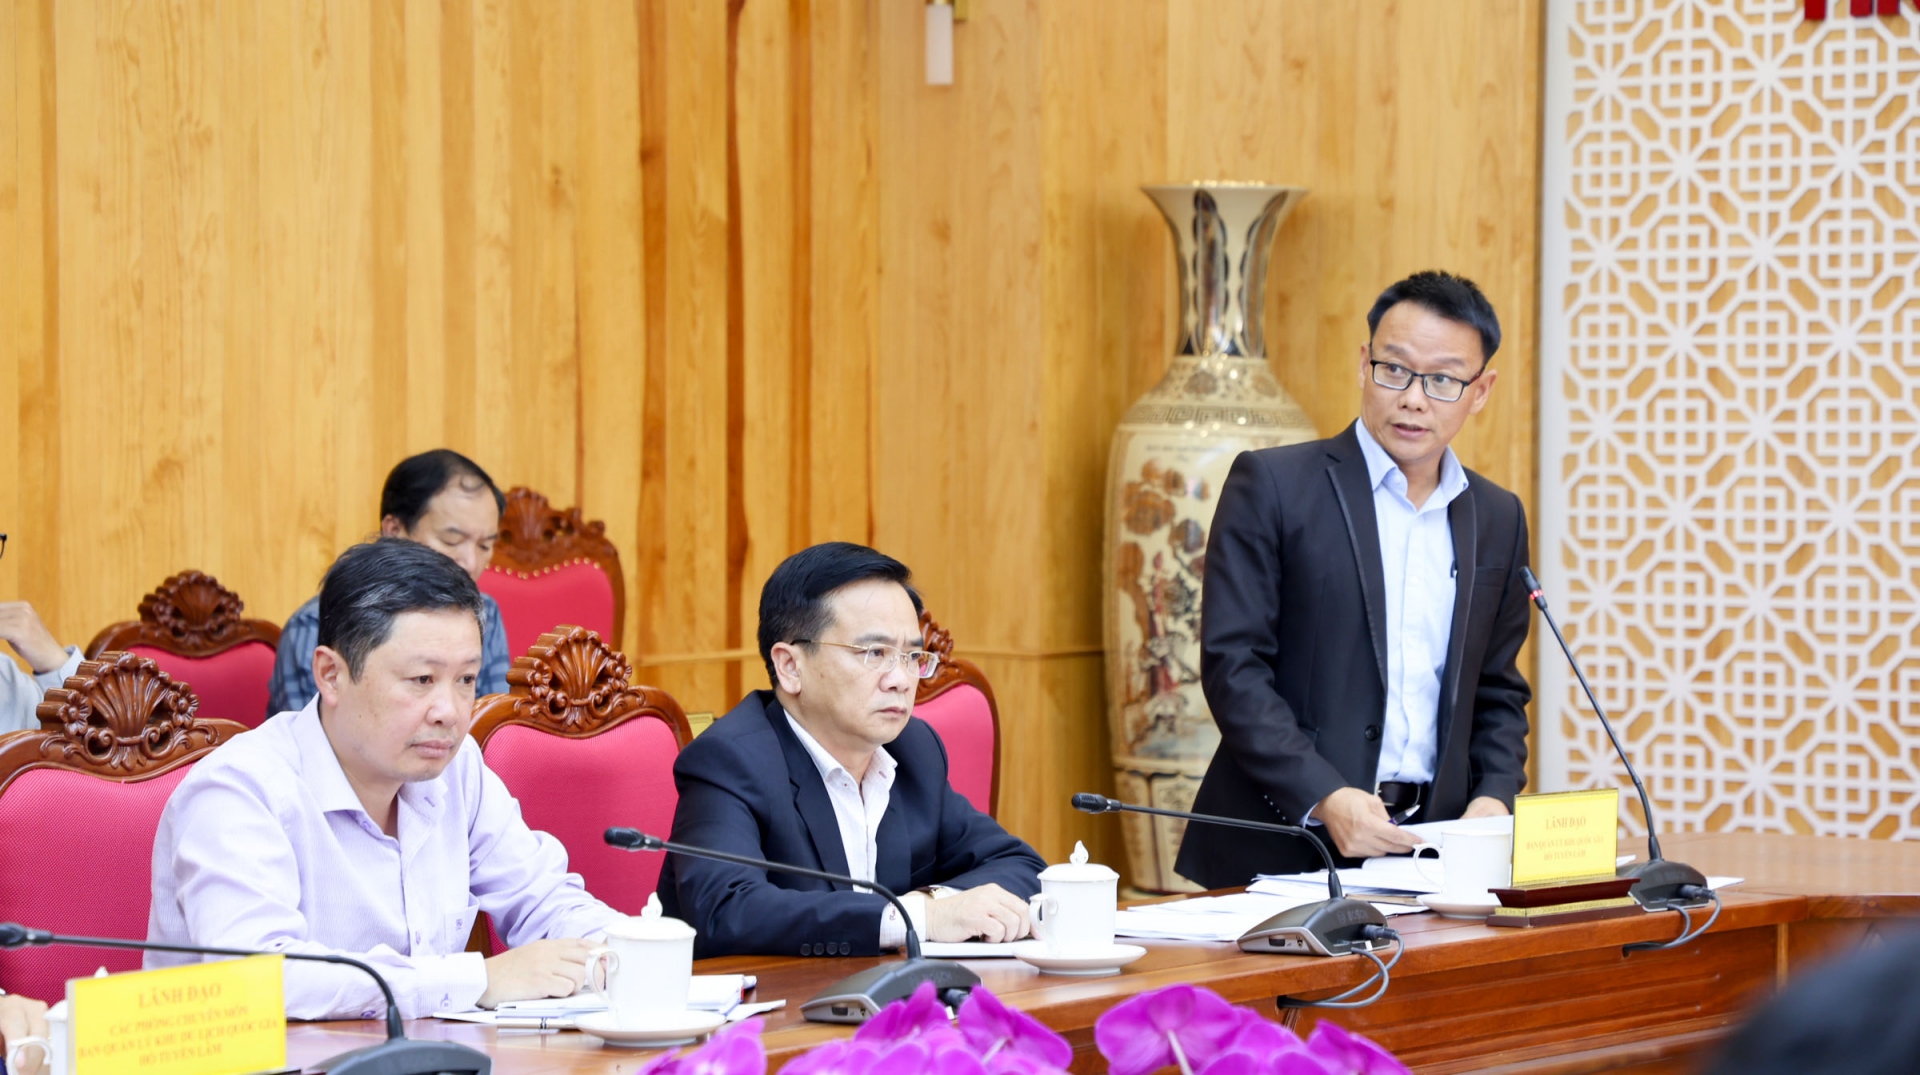 -	Ông Nguyễn Quốc Tuyến – Giám đốc Ban Quản lý KDLQG hồ Tuyền Lâm, trình bày báo cáo hoạt động